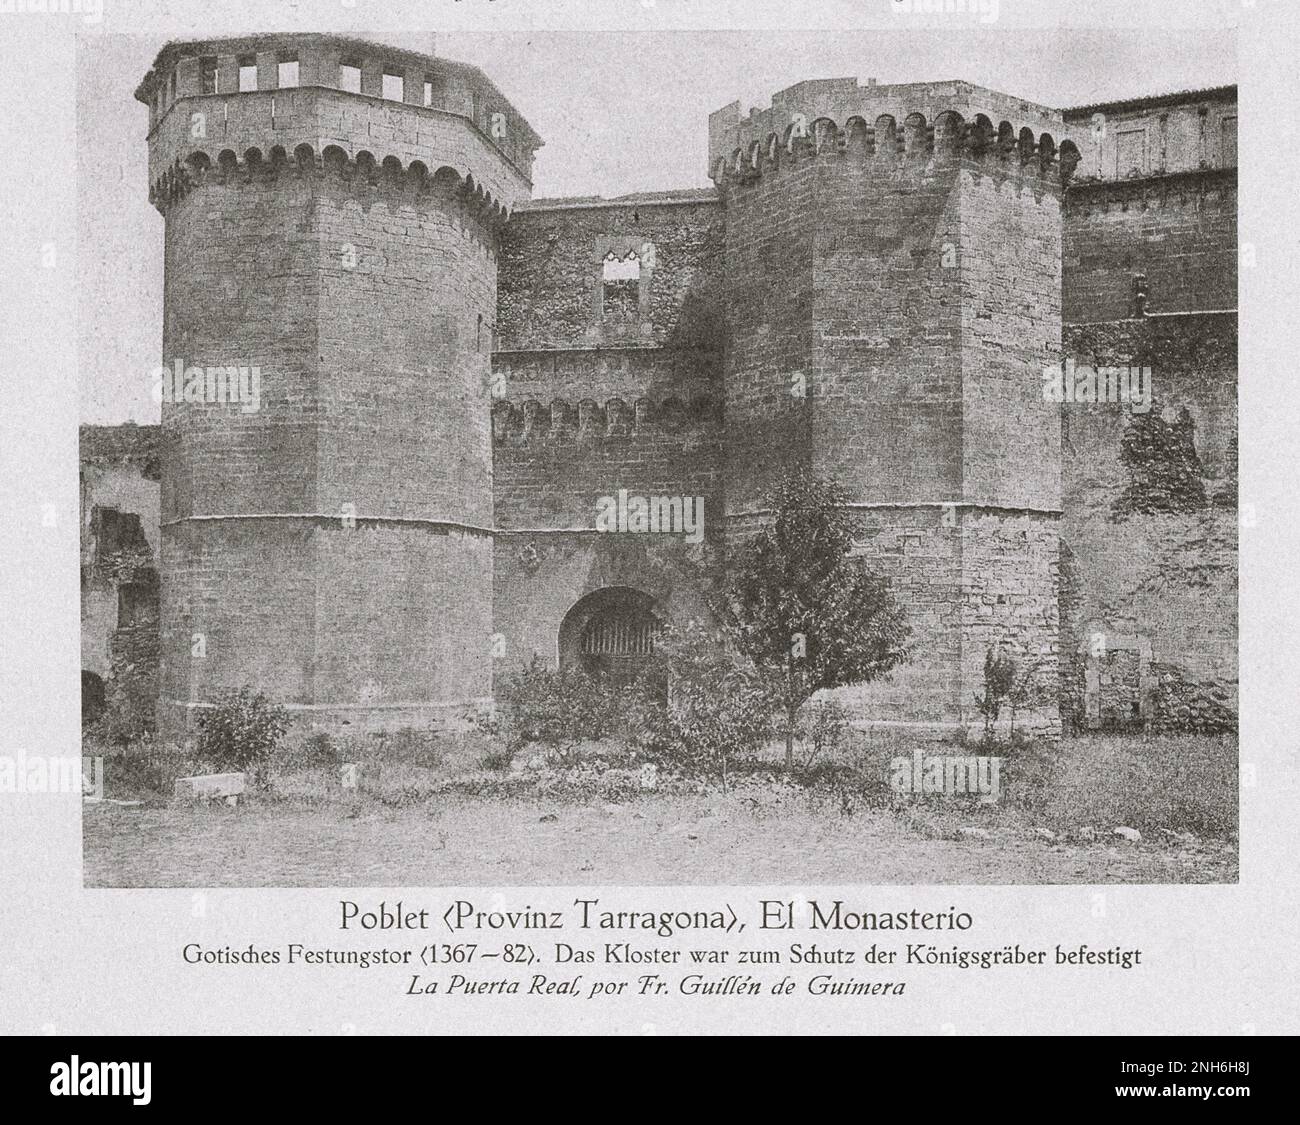 Architektur des alten Spaniens. Poblet, Abtei, Provinz Tarragona, Spanien. Gotisches Festungstor (1367-1382). Das Kloster wurde zum Schutz der königlichen Gräber befestigt Stockfoto